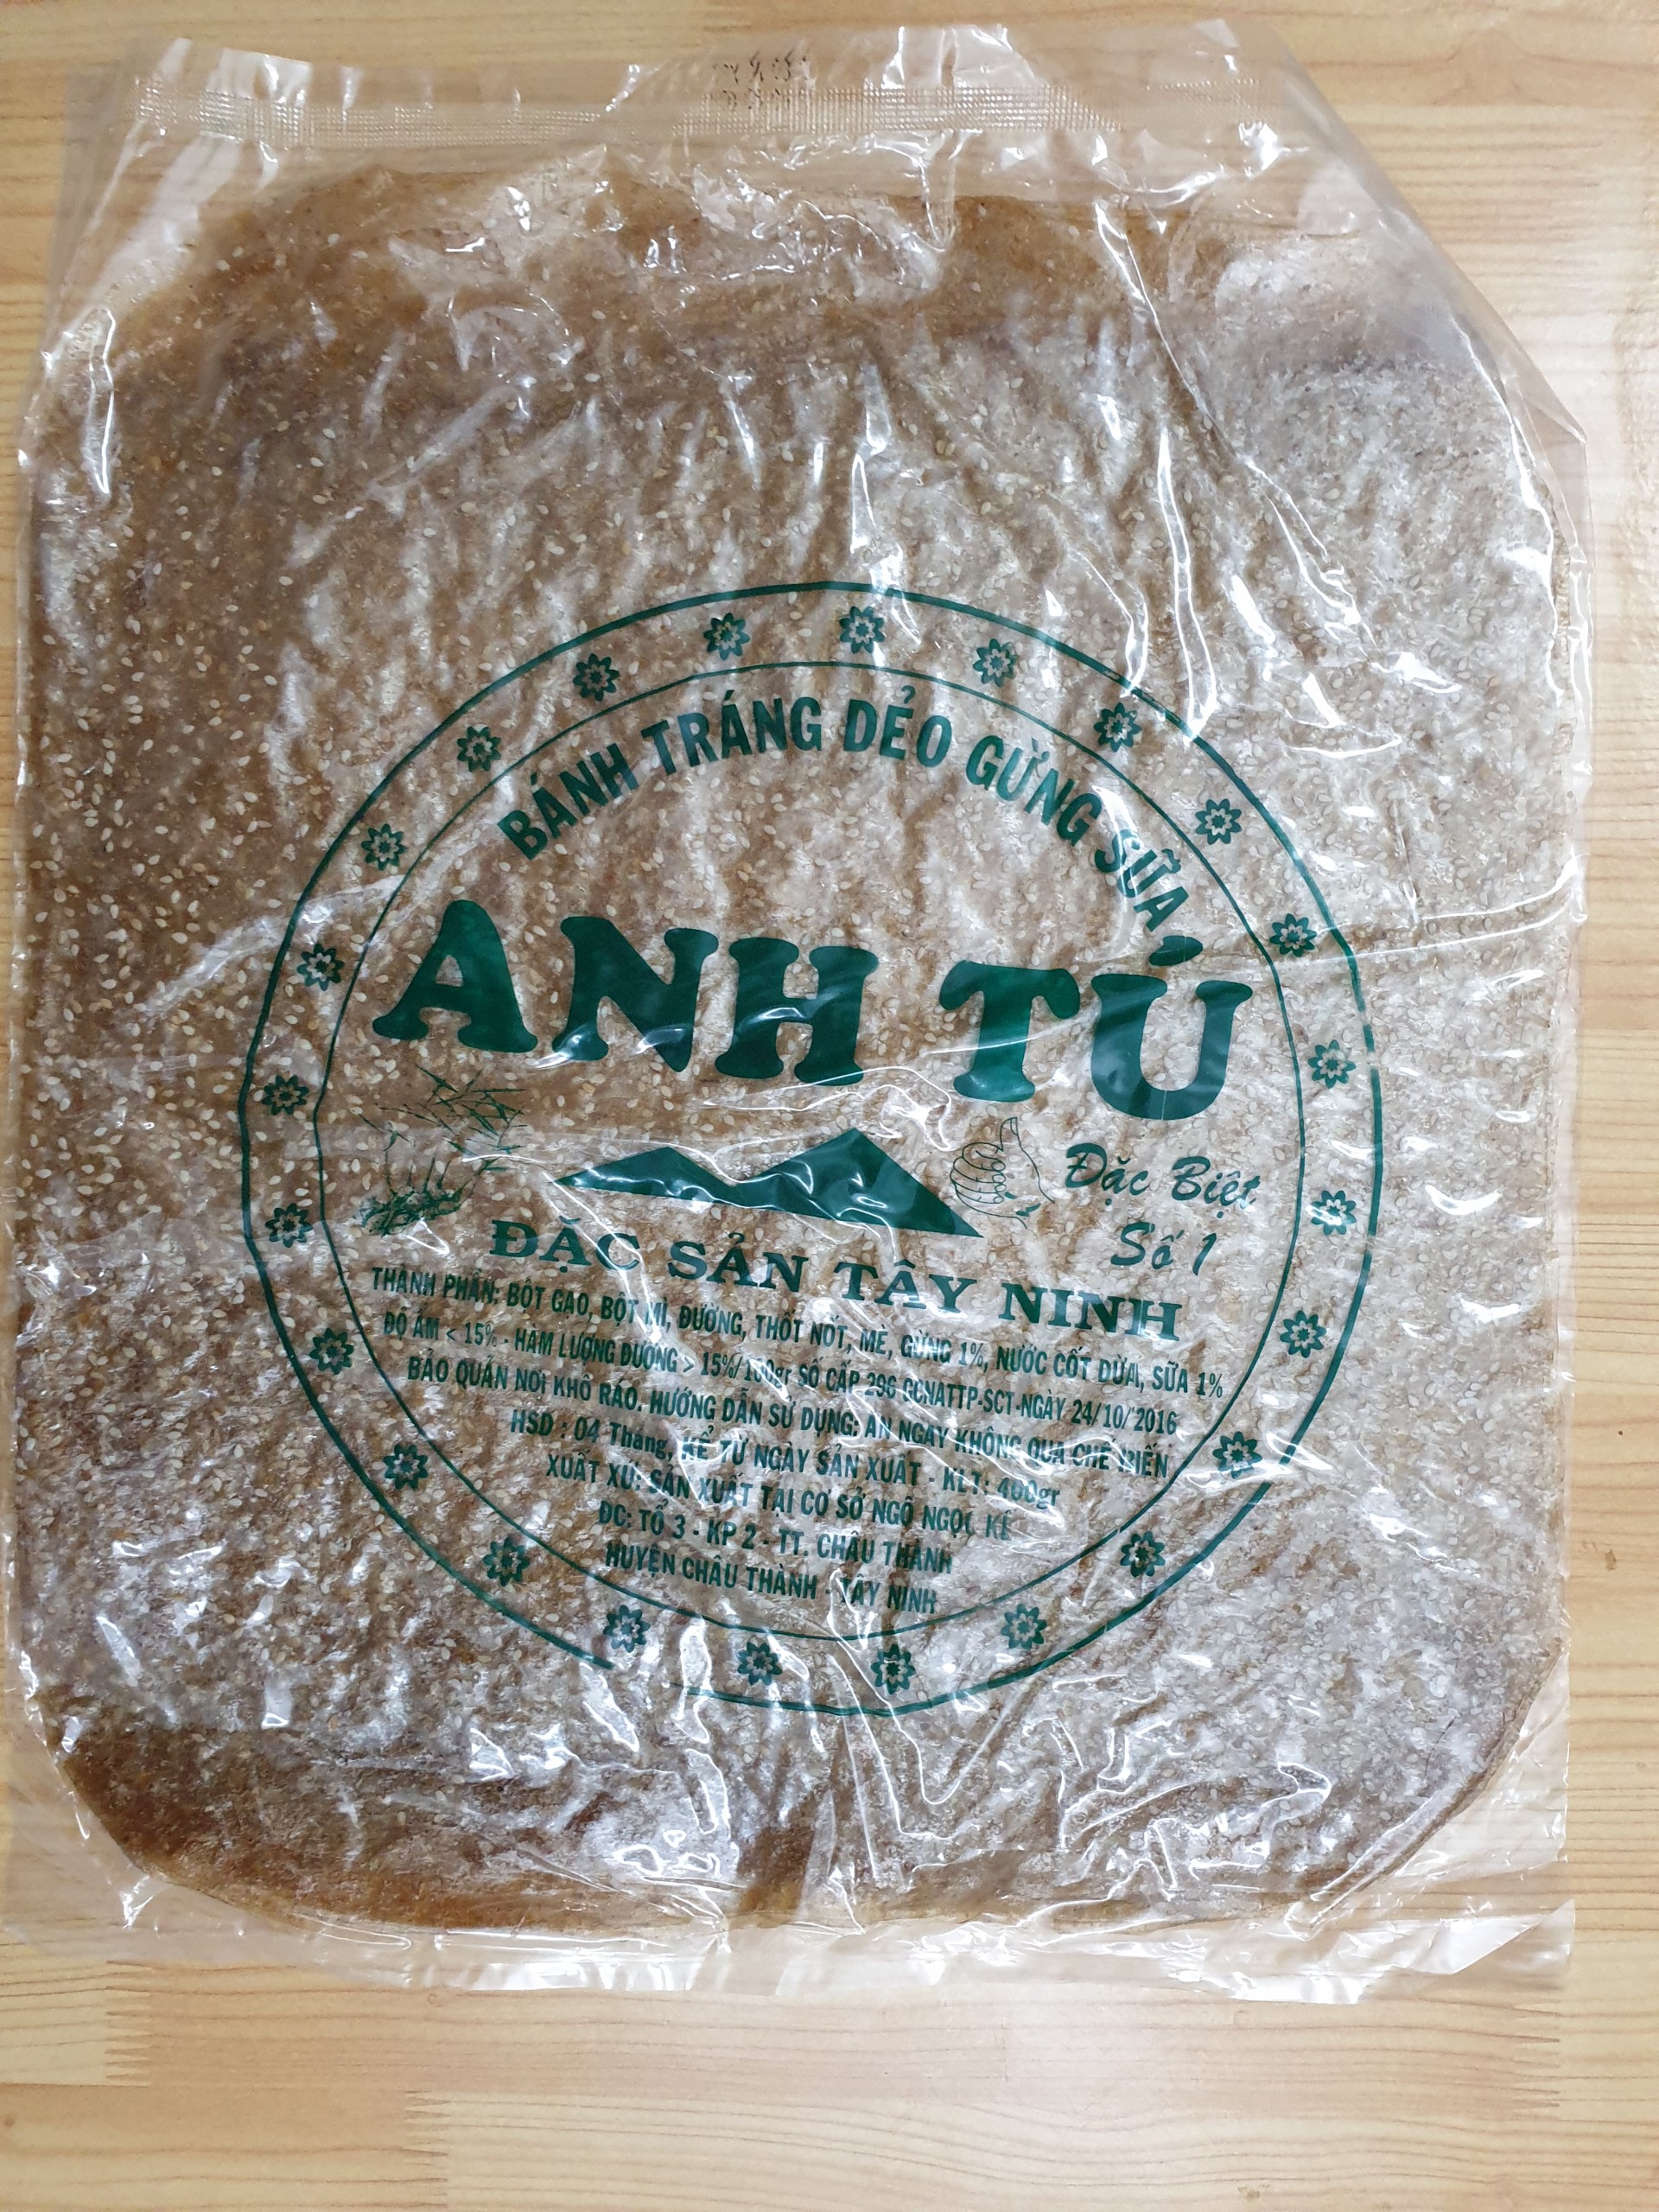 Xấp 400g Bánh Tráng Dẻo Gừng Sữa Anh Tú Chữ Xanh-đồ ăn vặt-tết-Đặc Sản Tây Ninh